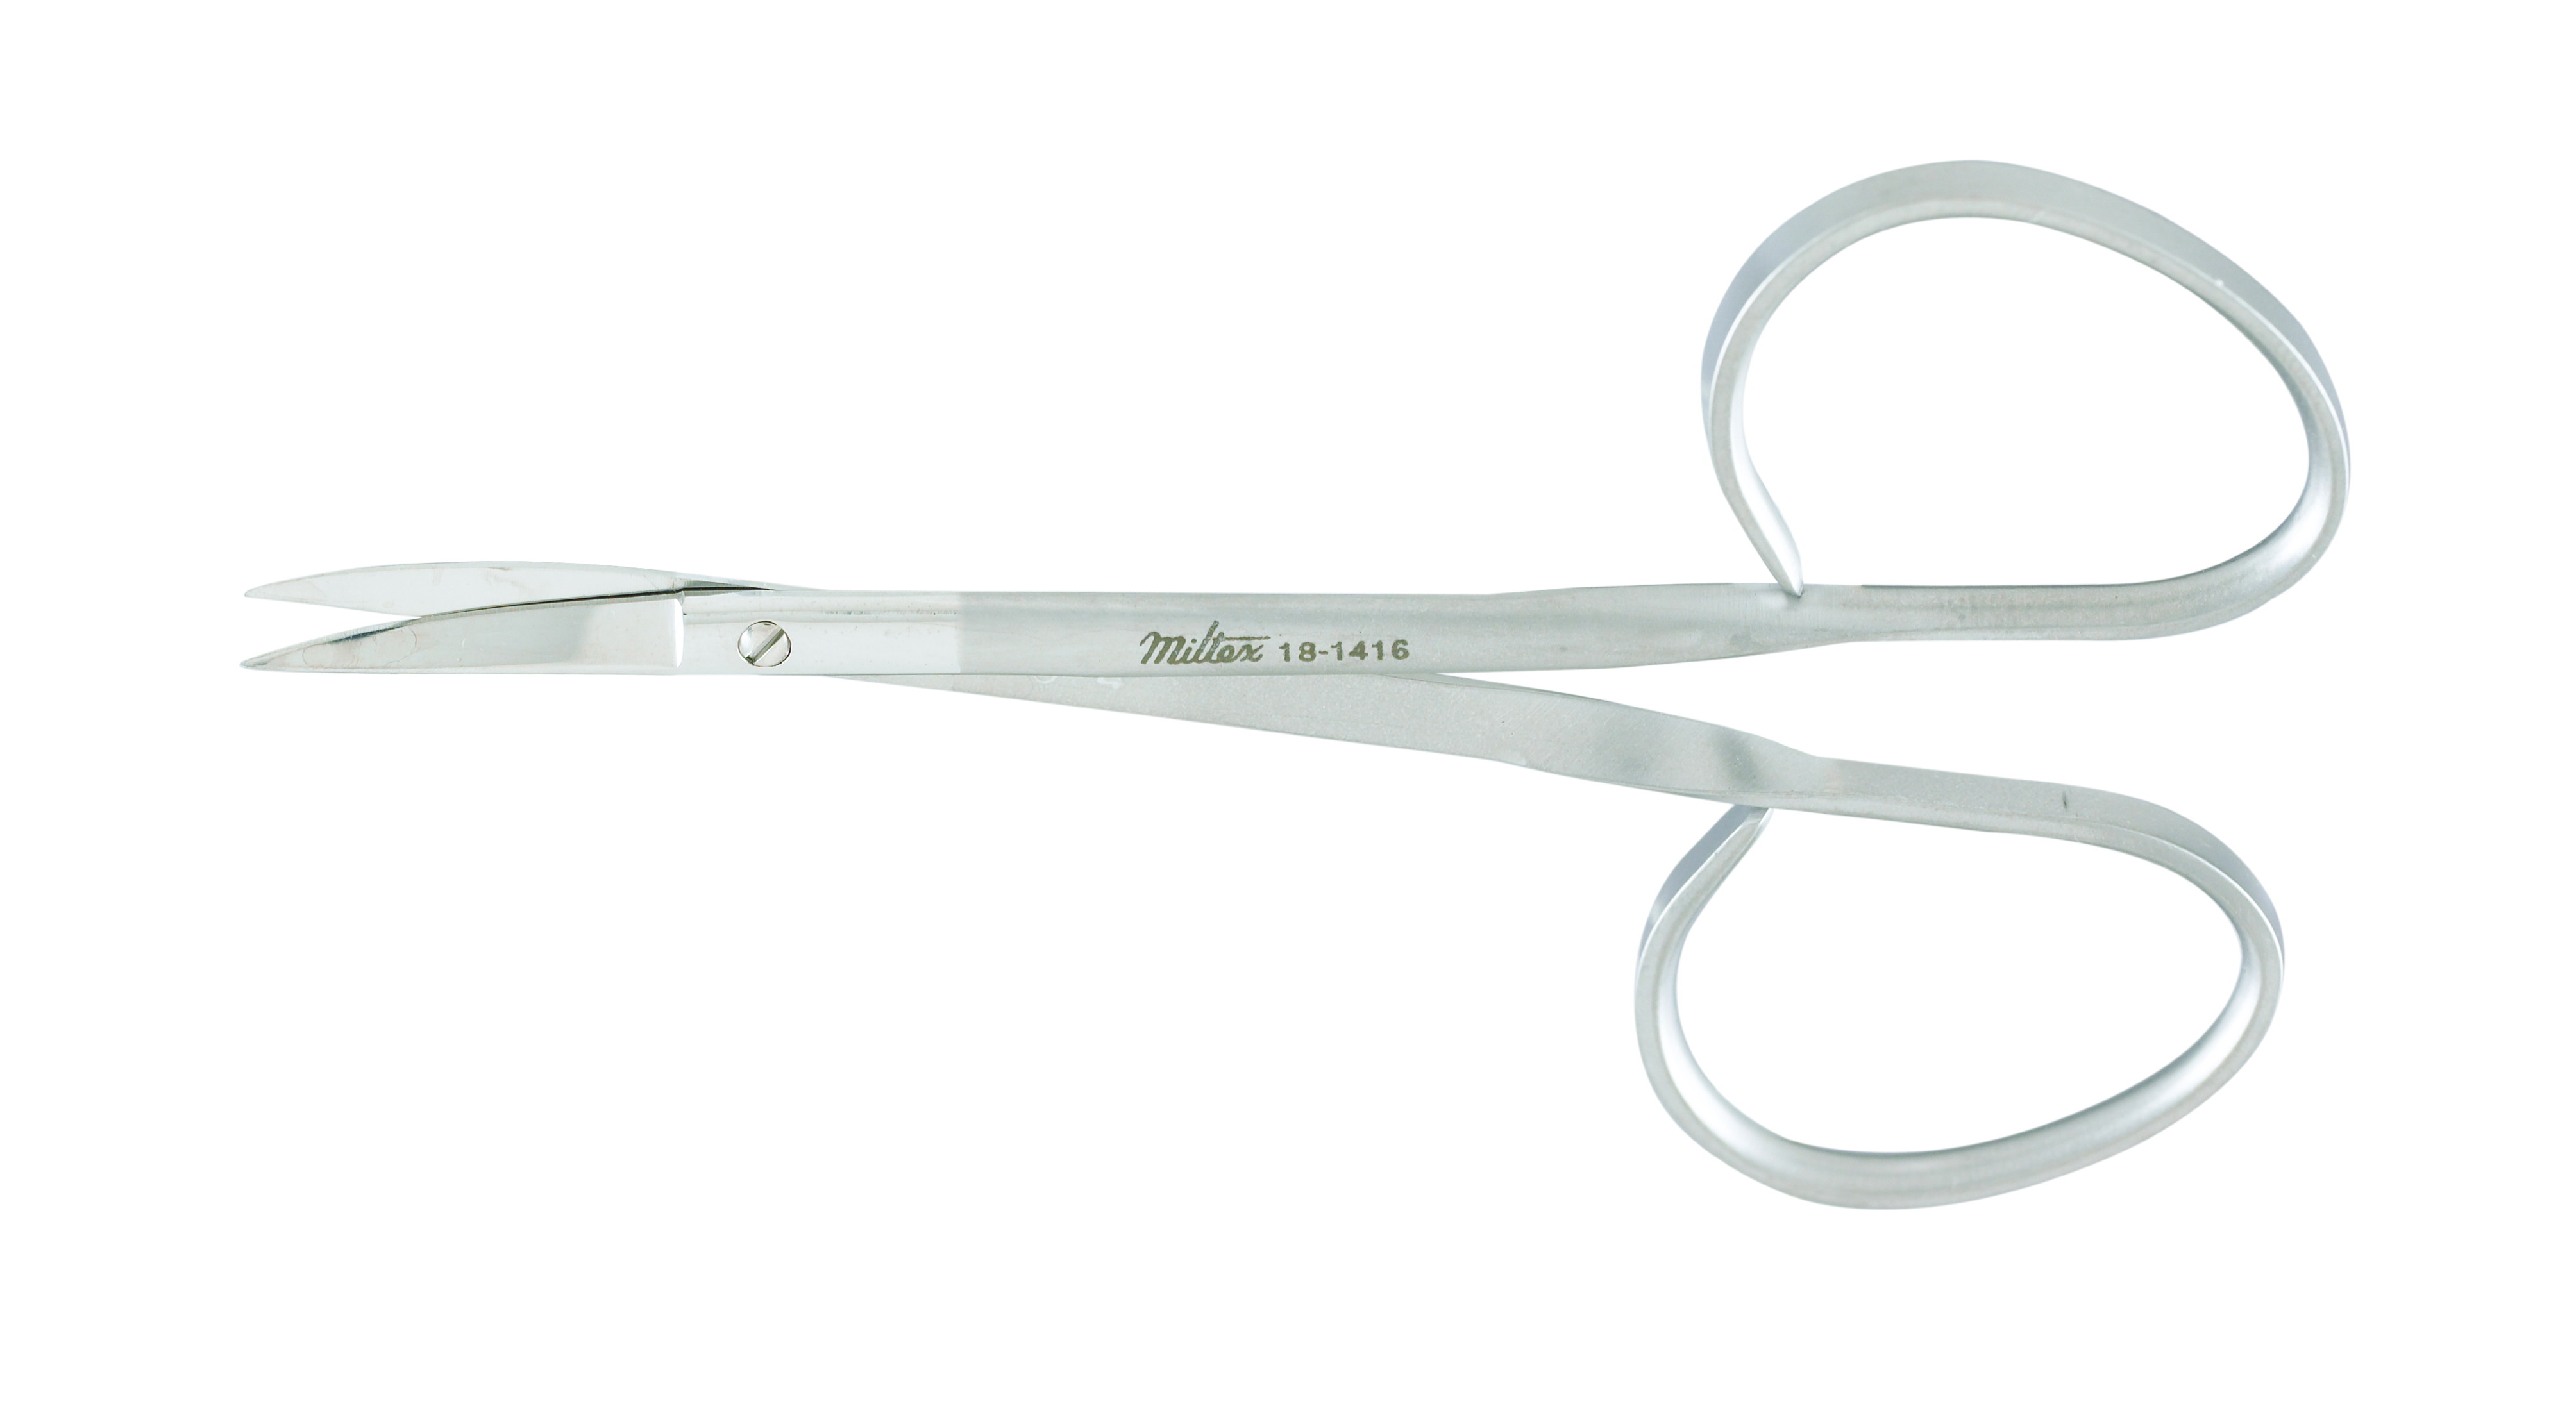 iris-scissors-4-102-cm-curved-standard-pattern-ribbon-tpe-18-1416-miltex.jpg